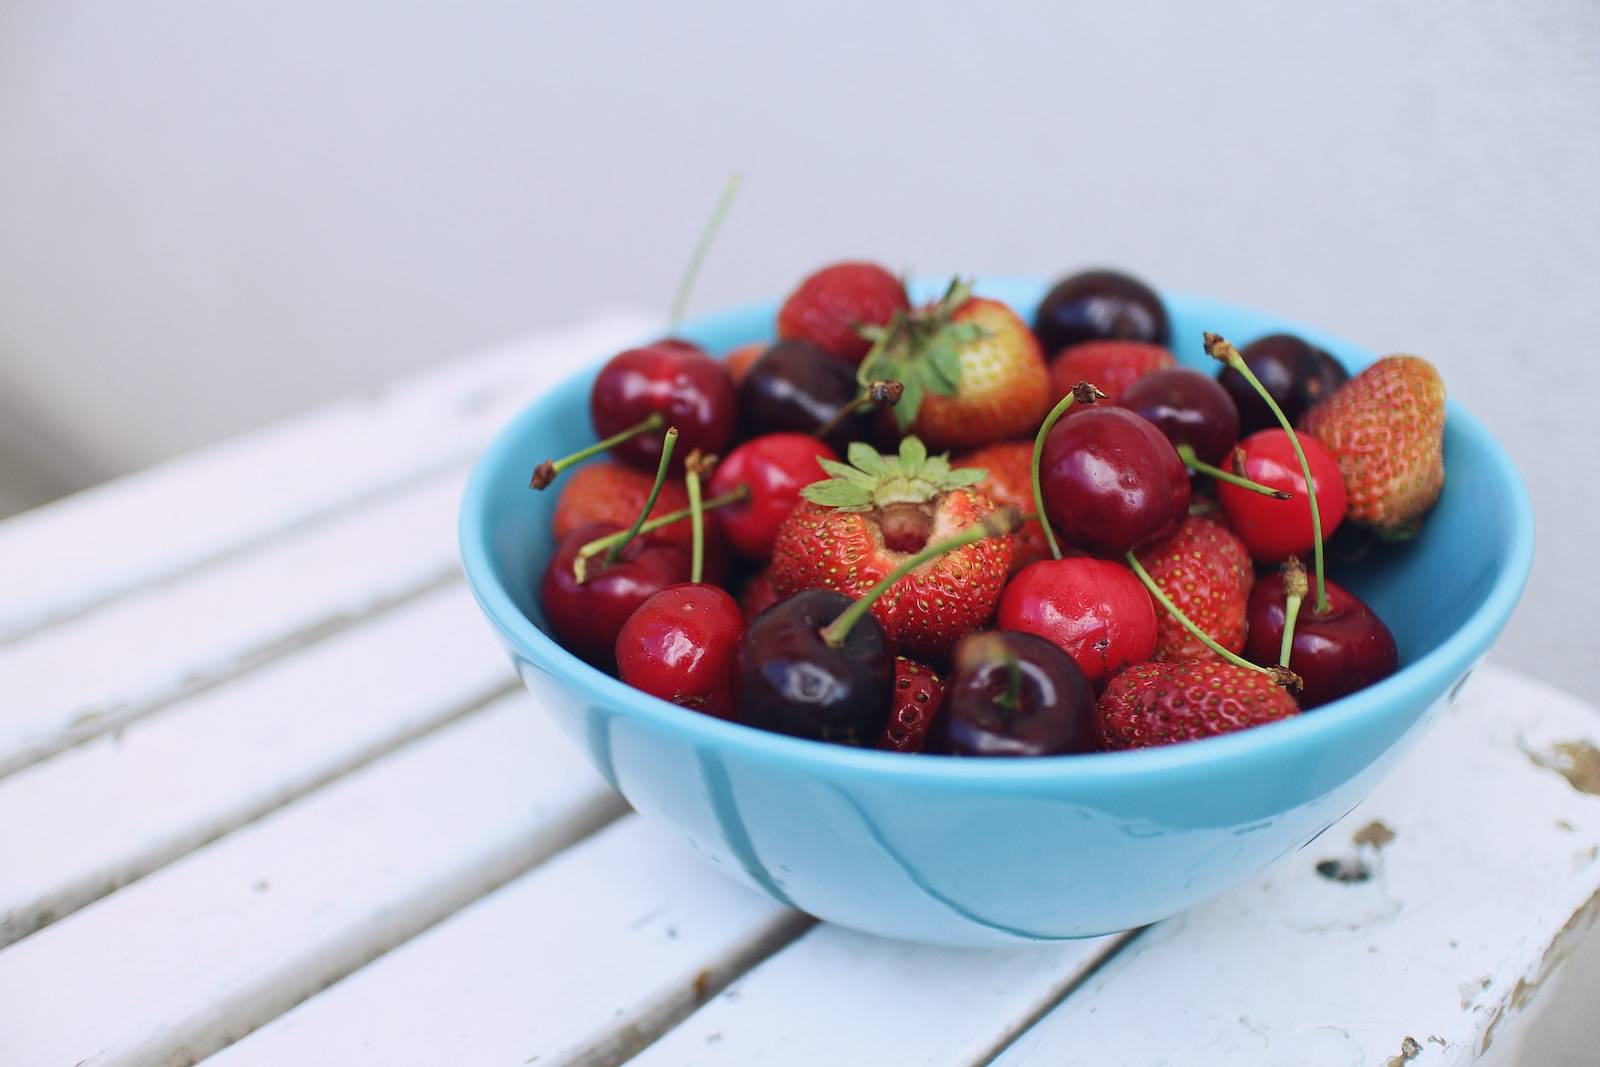 Thé noir, fruits rouges, à coque: ces aliments riches en antioxydants aggravent les risques de cancer